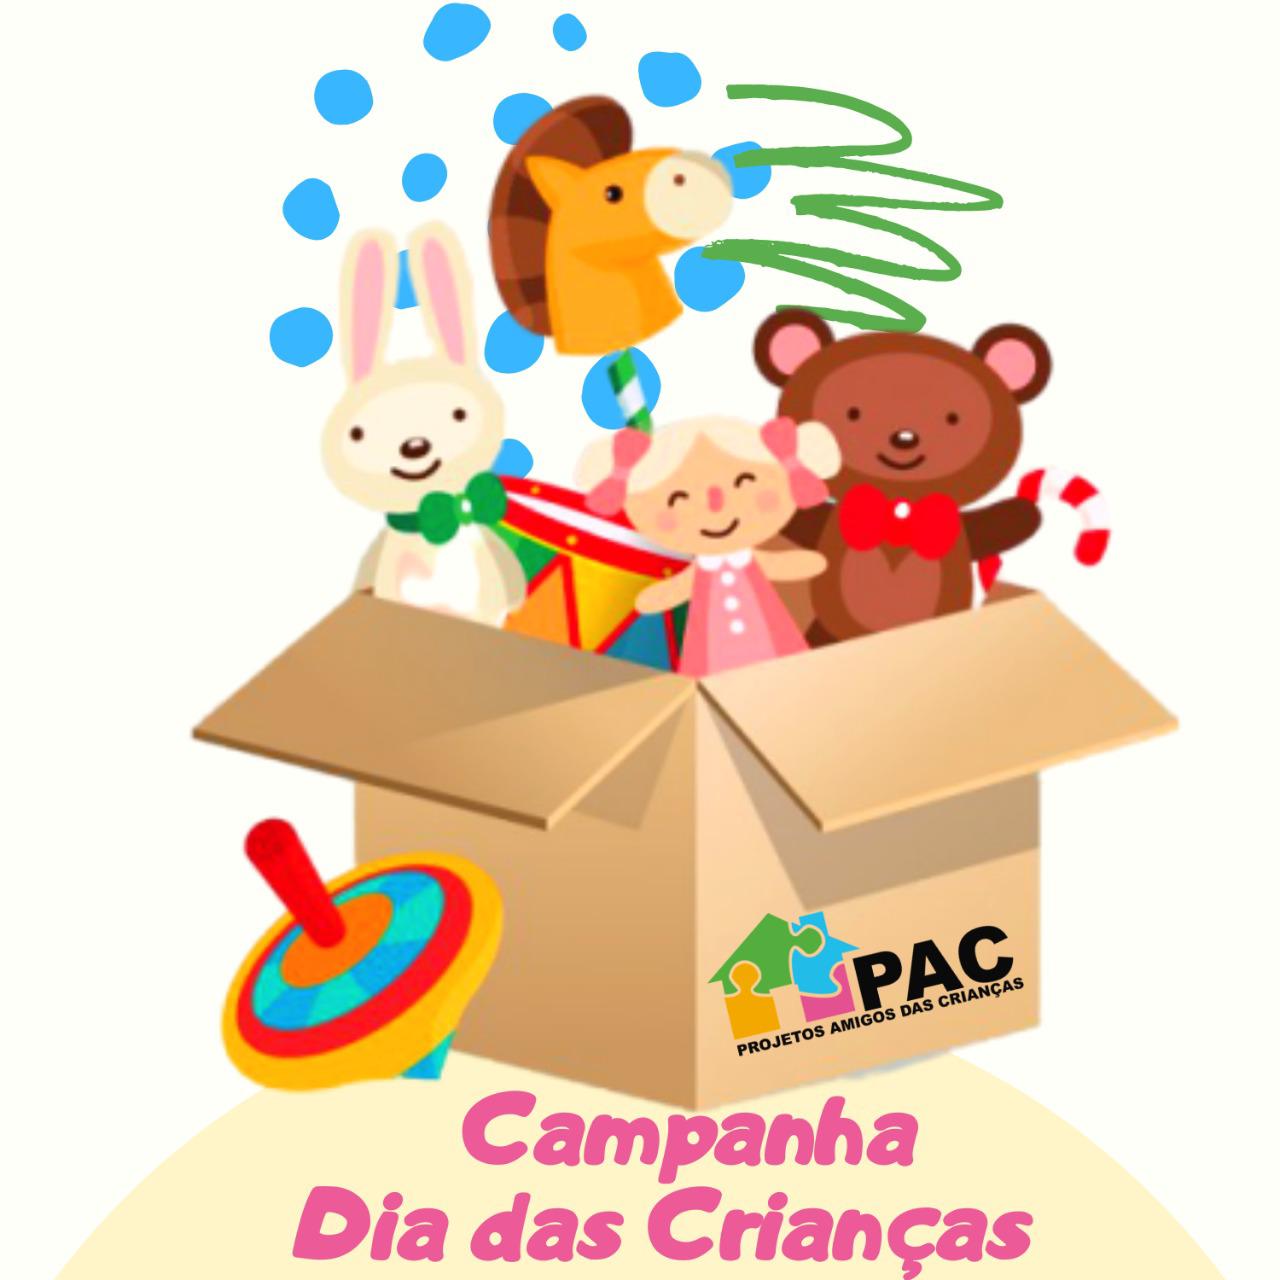 You are currently viewing Campanha de Dia das Crianças PAC